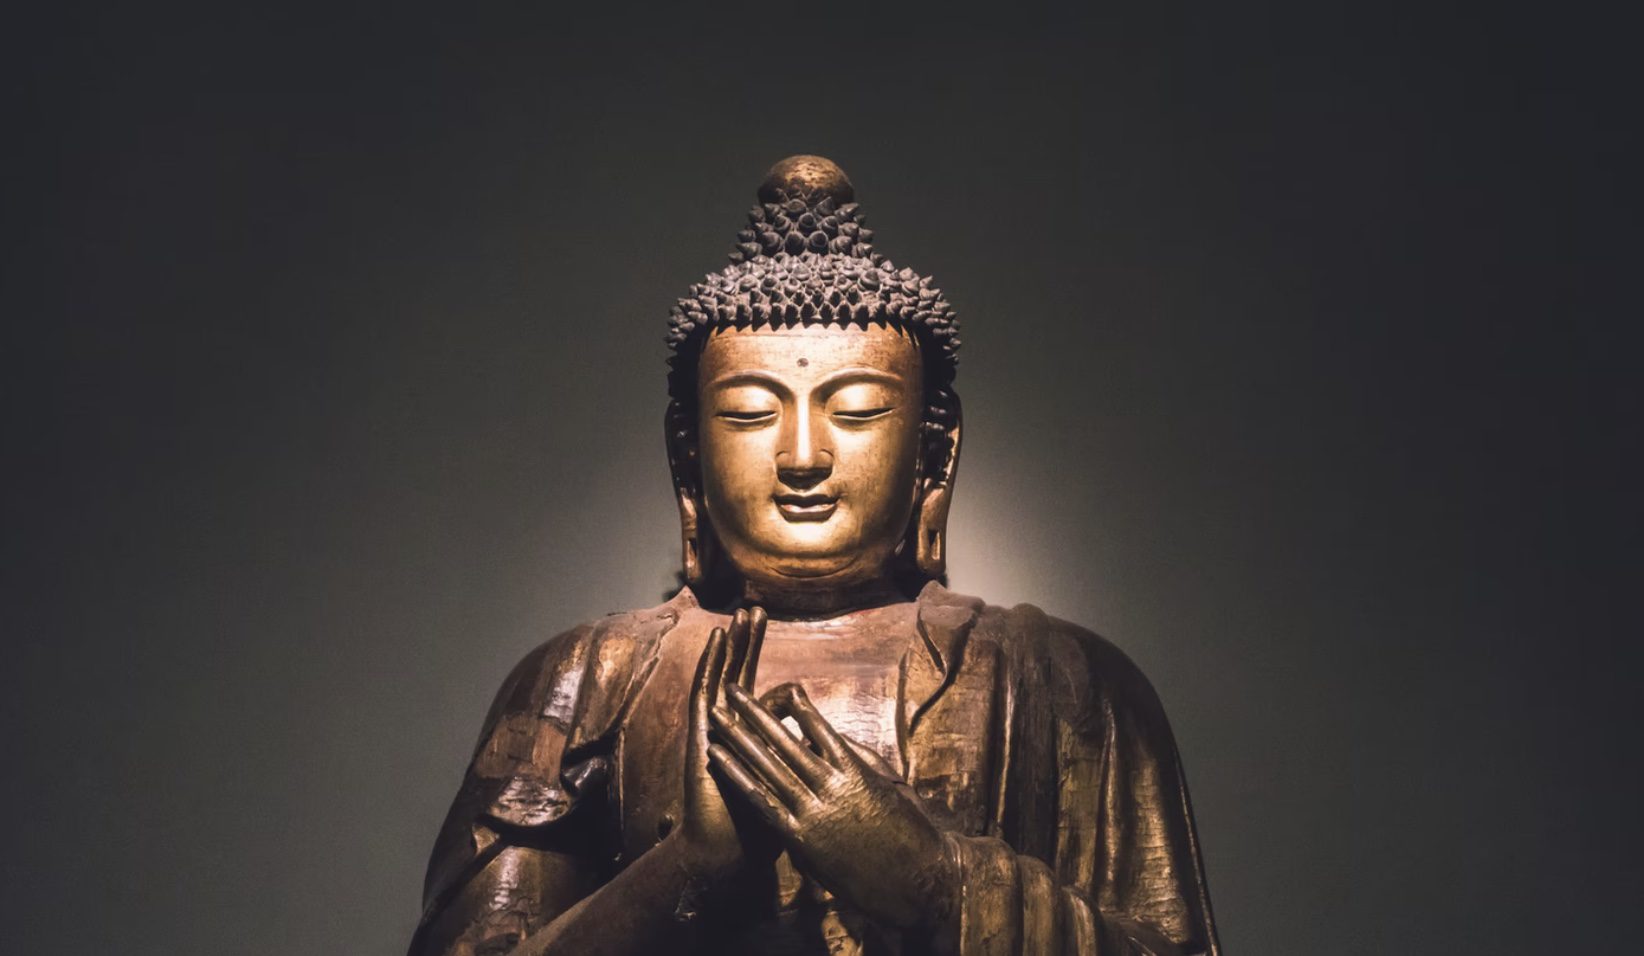 Temple bouddhiste : comment trouver un lieu pour apprendre et se ressourcer ?